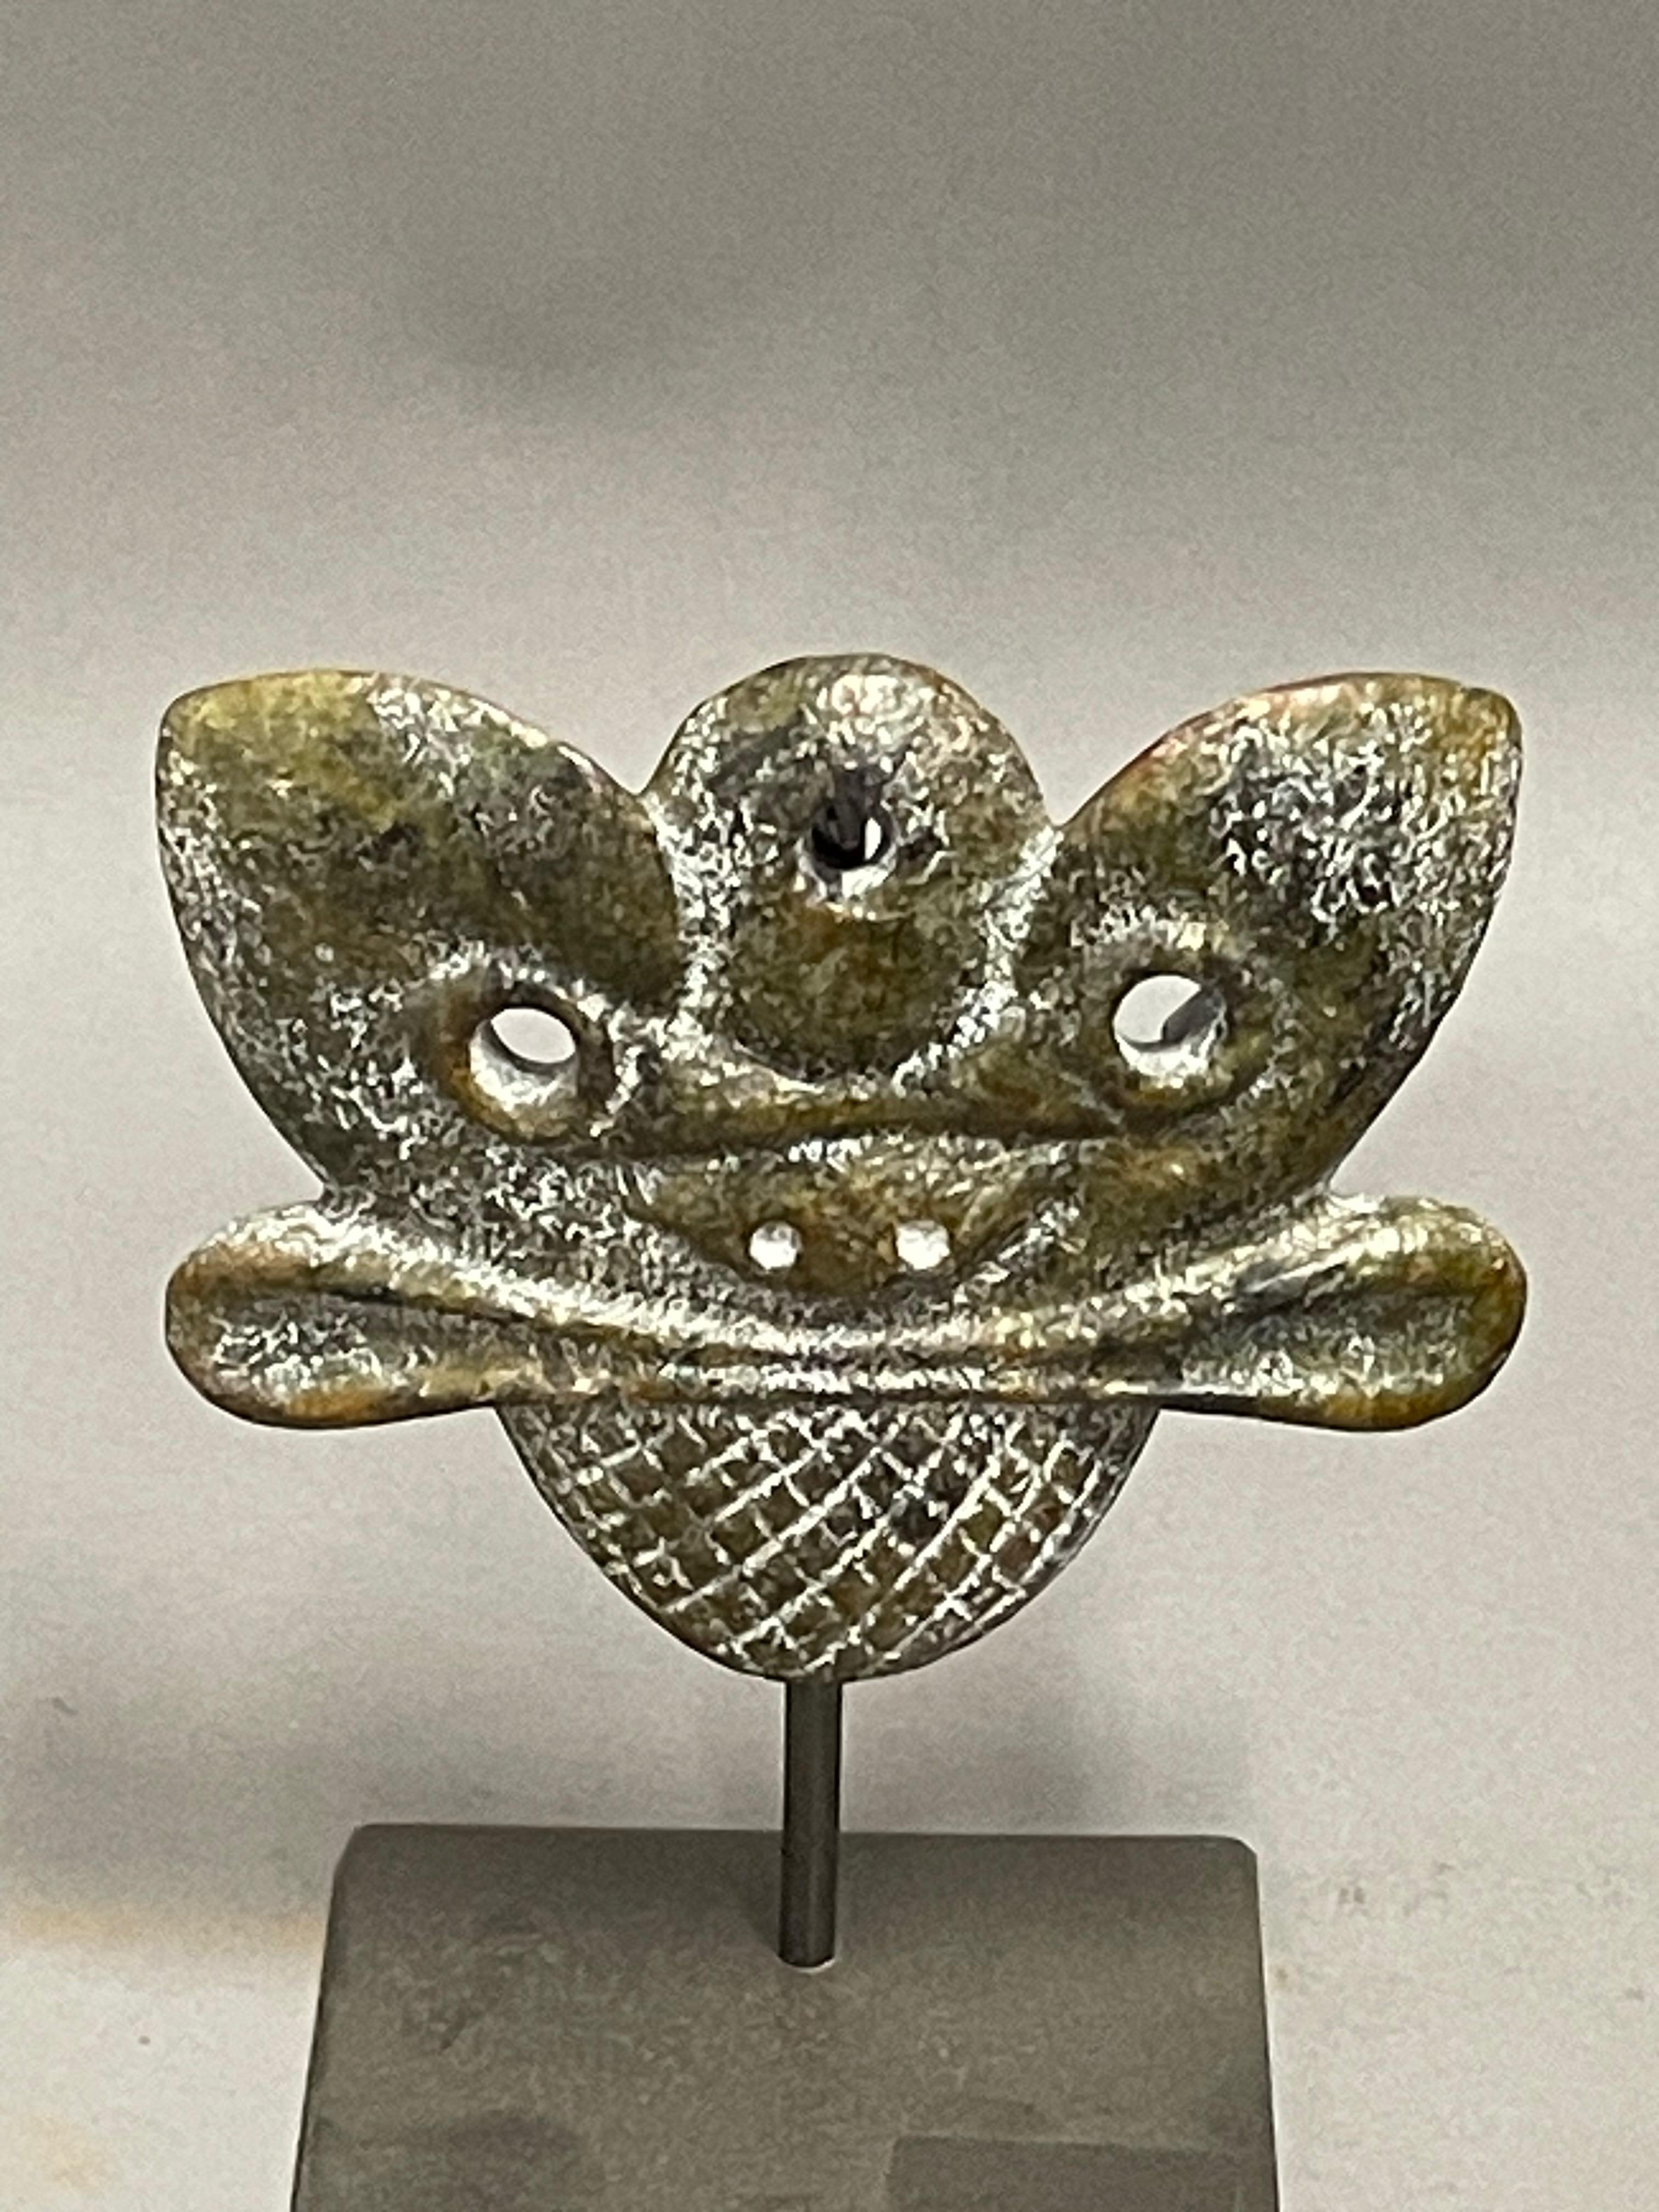 Masque chinois contemporain en pierre, sculpté à la main, sur socle en métal.
Mesures du stand   4